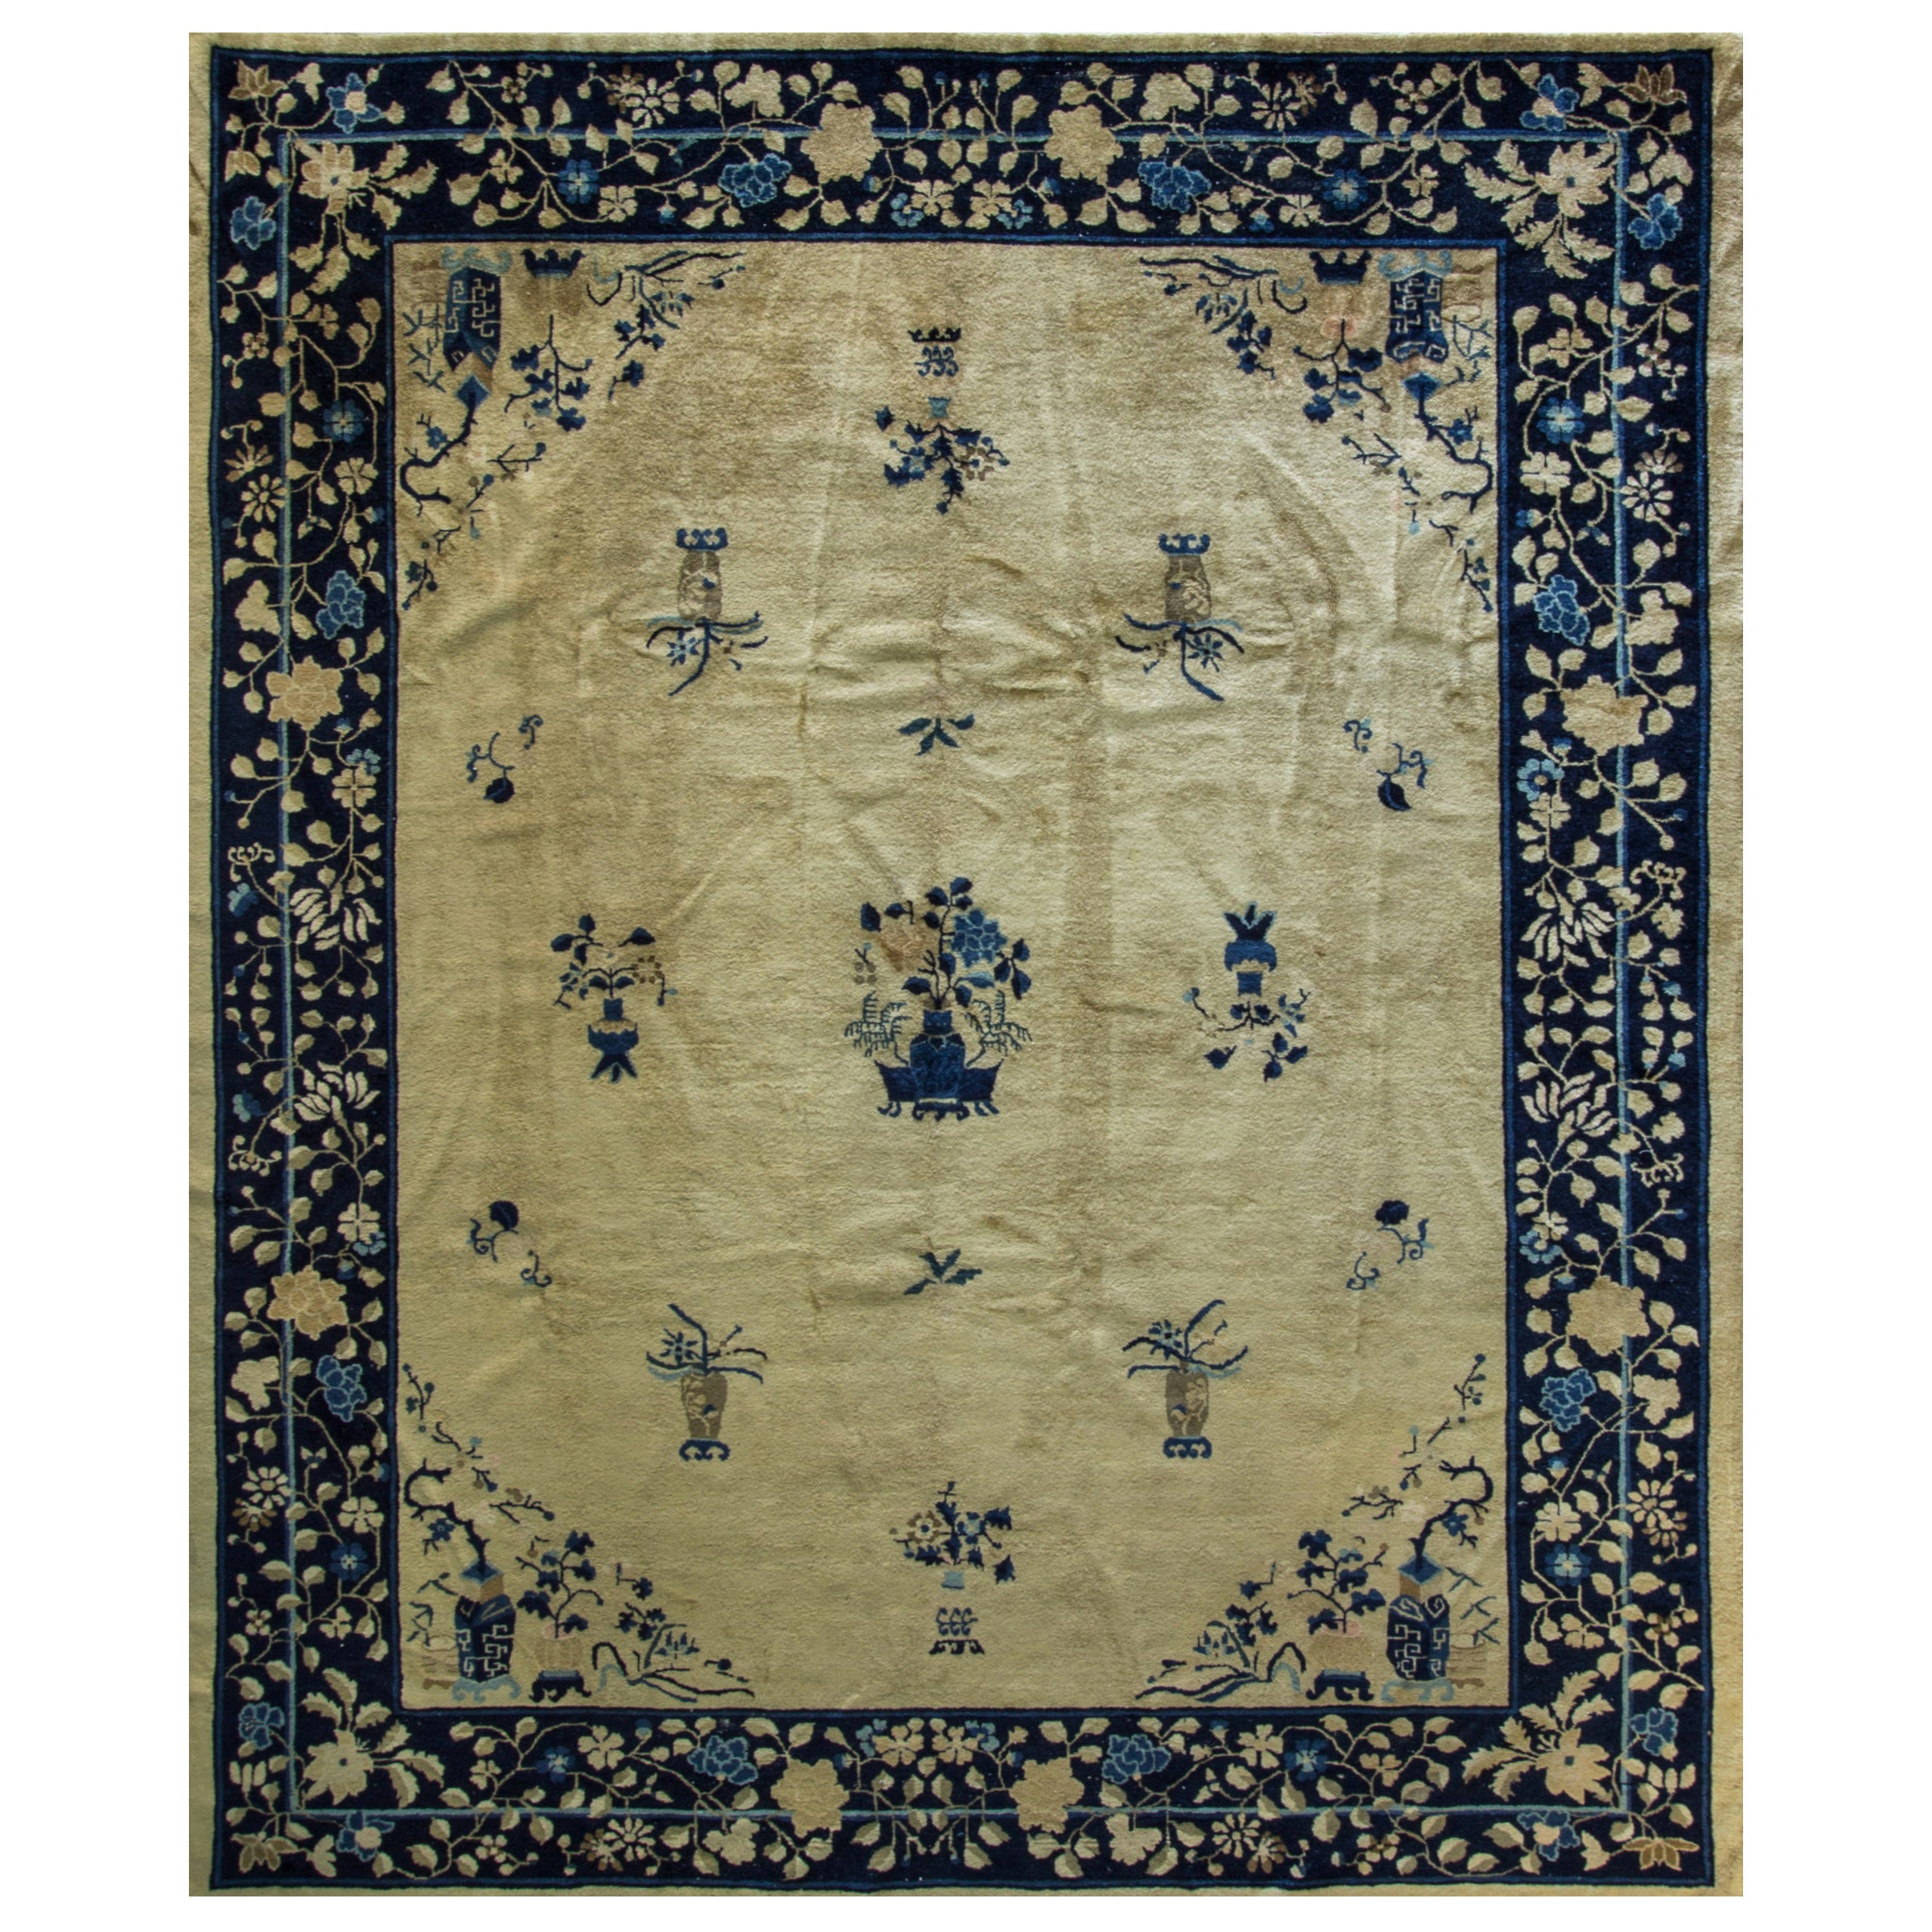 Antique Chinese Peking Carpet